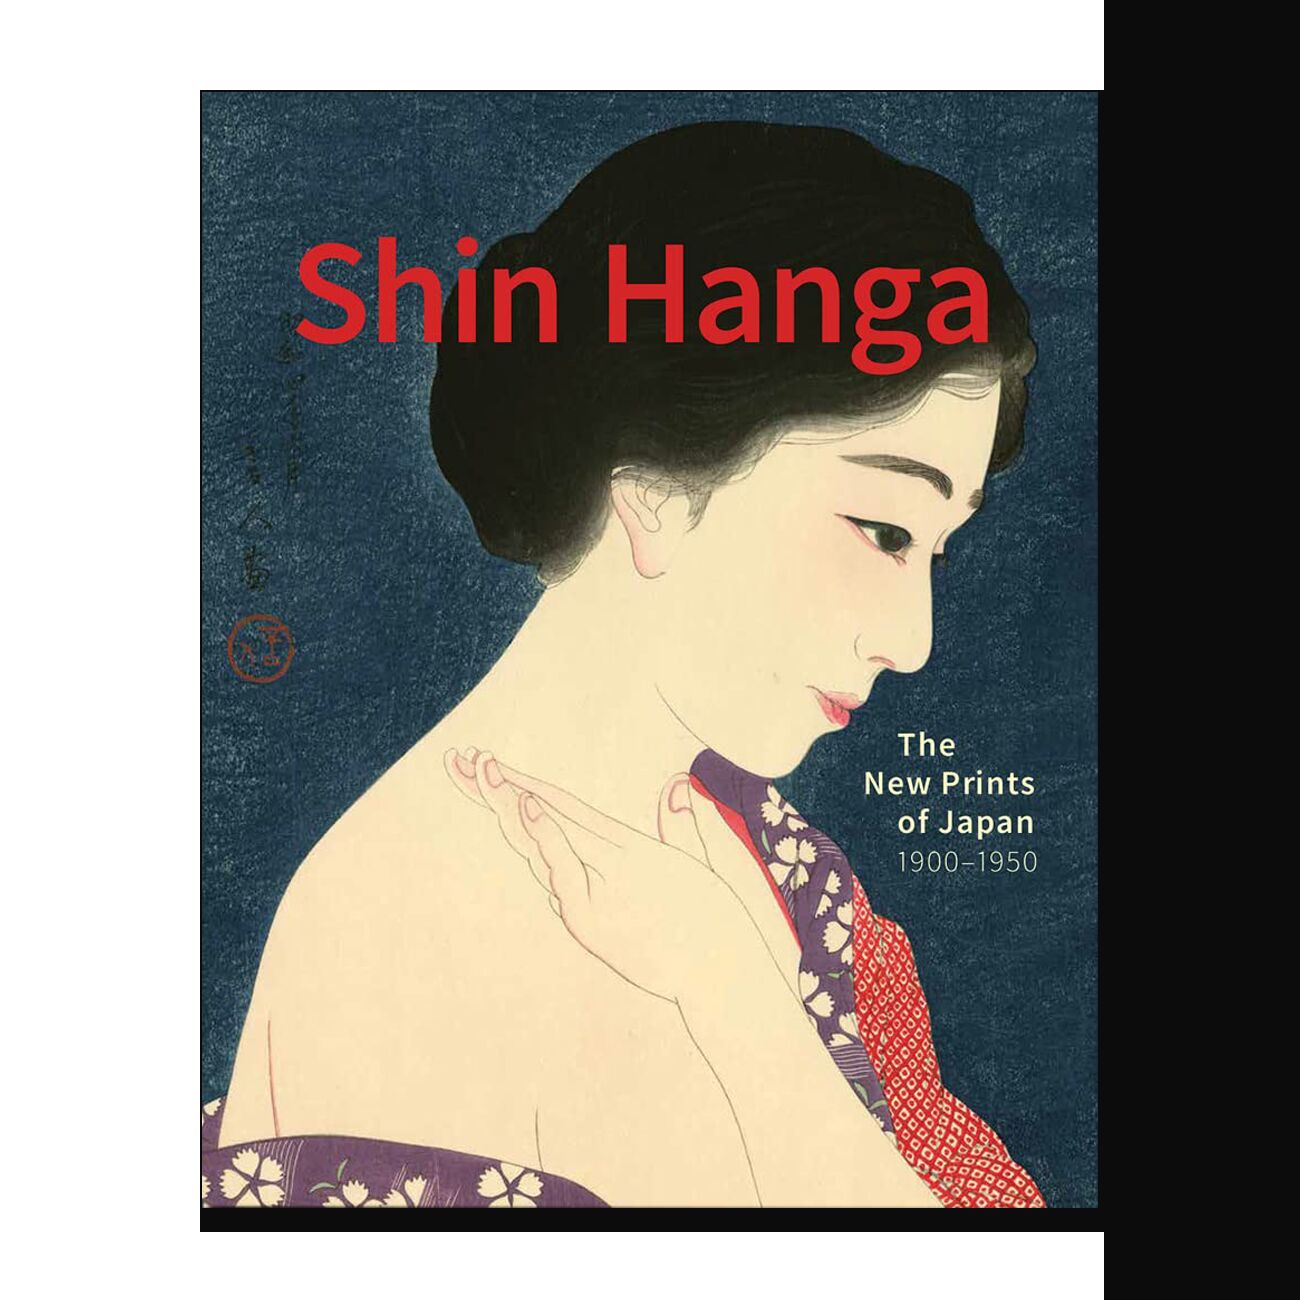 Shin Hanga: The New Prints of Japan